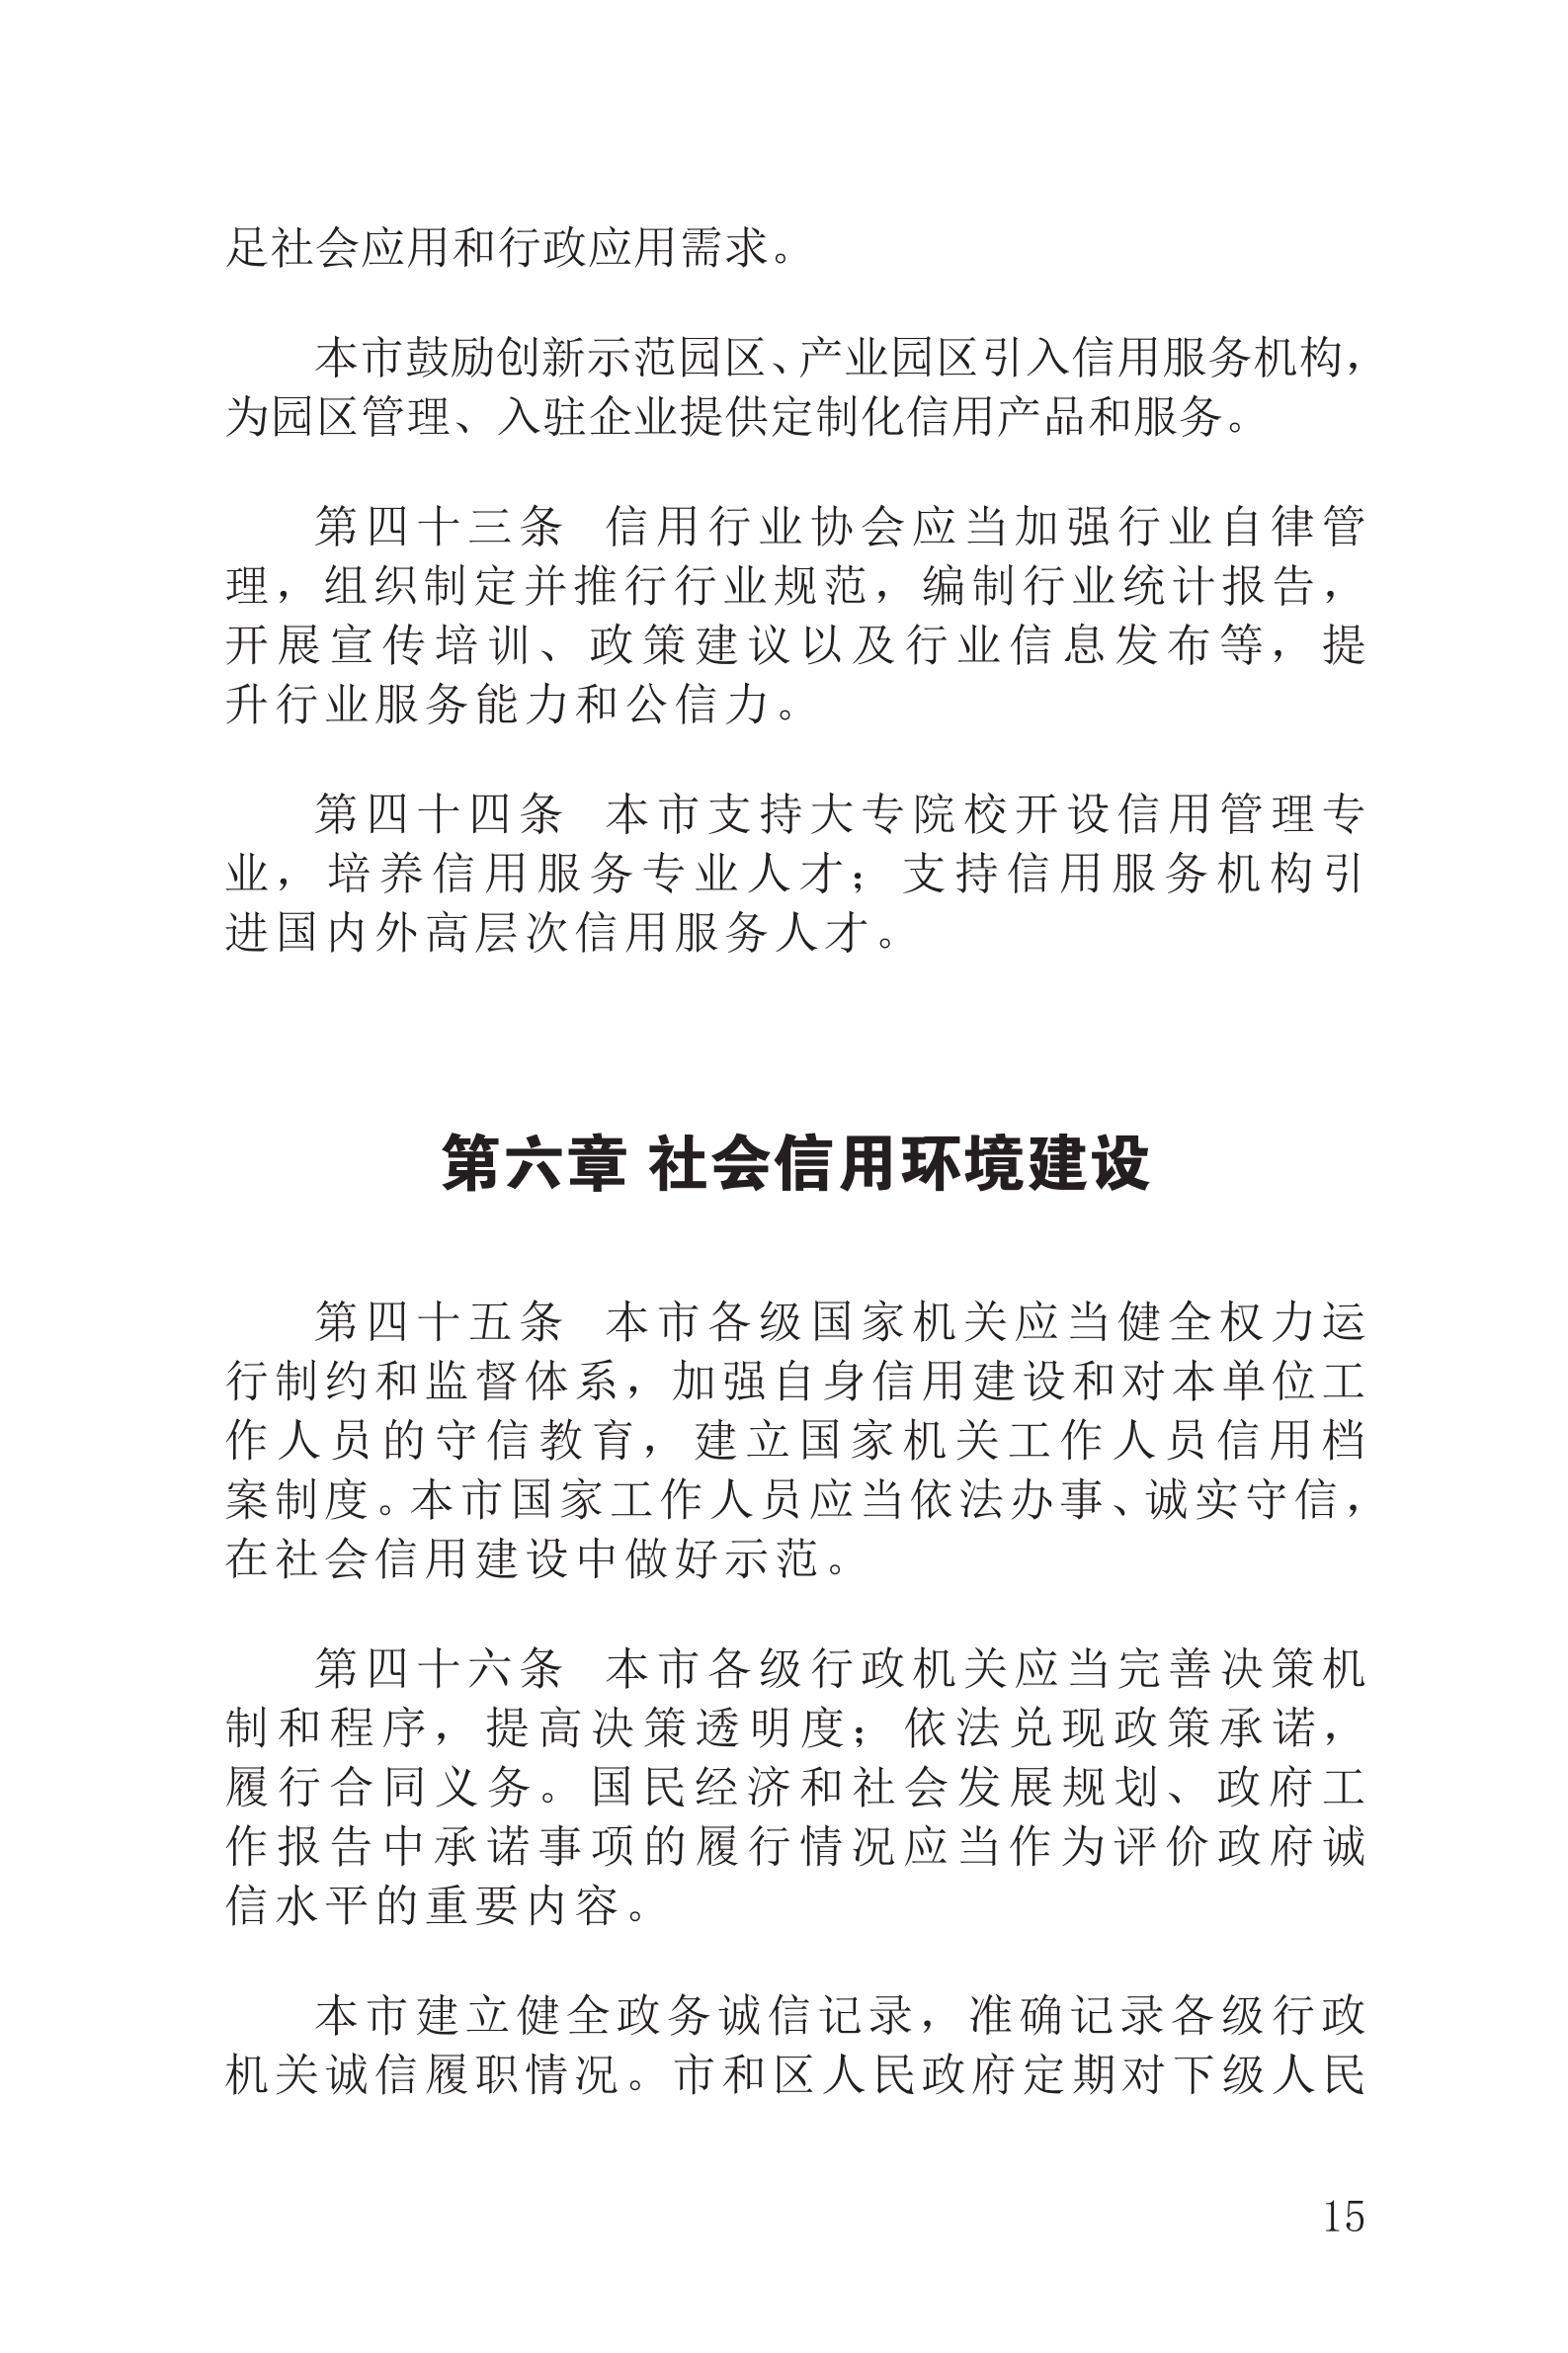 上海市社会信用条例_16.png